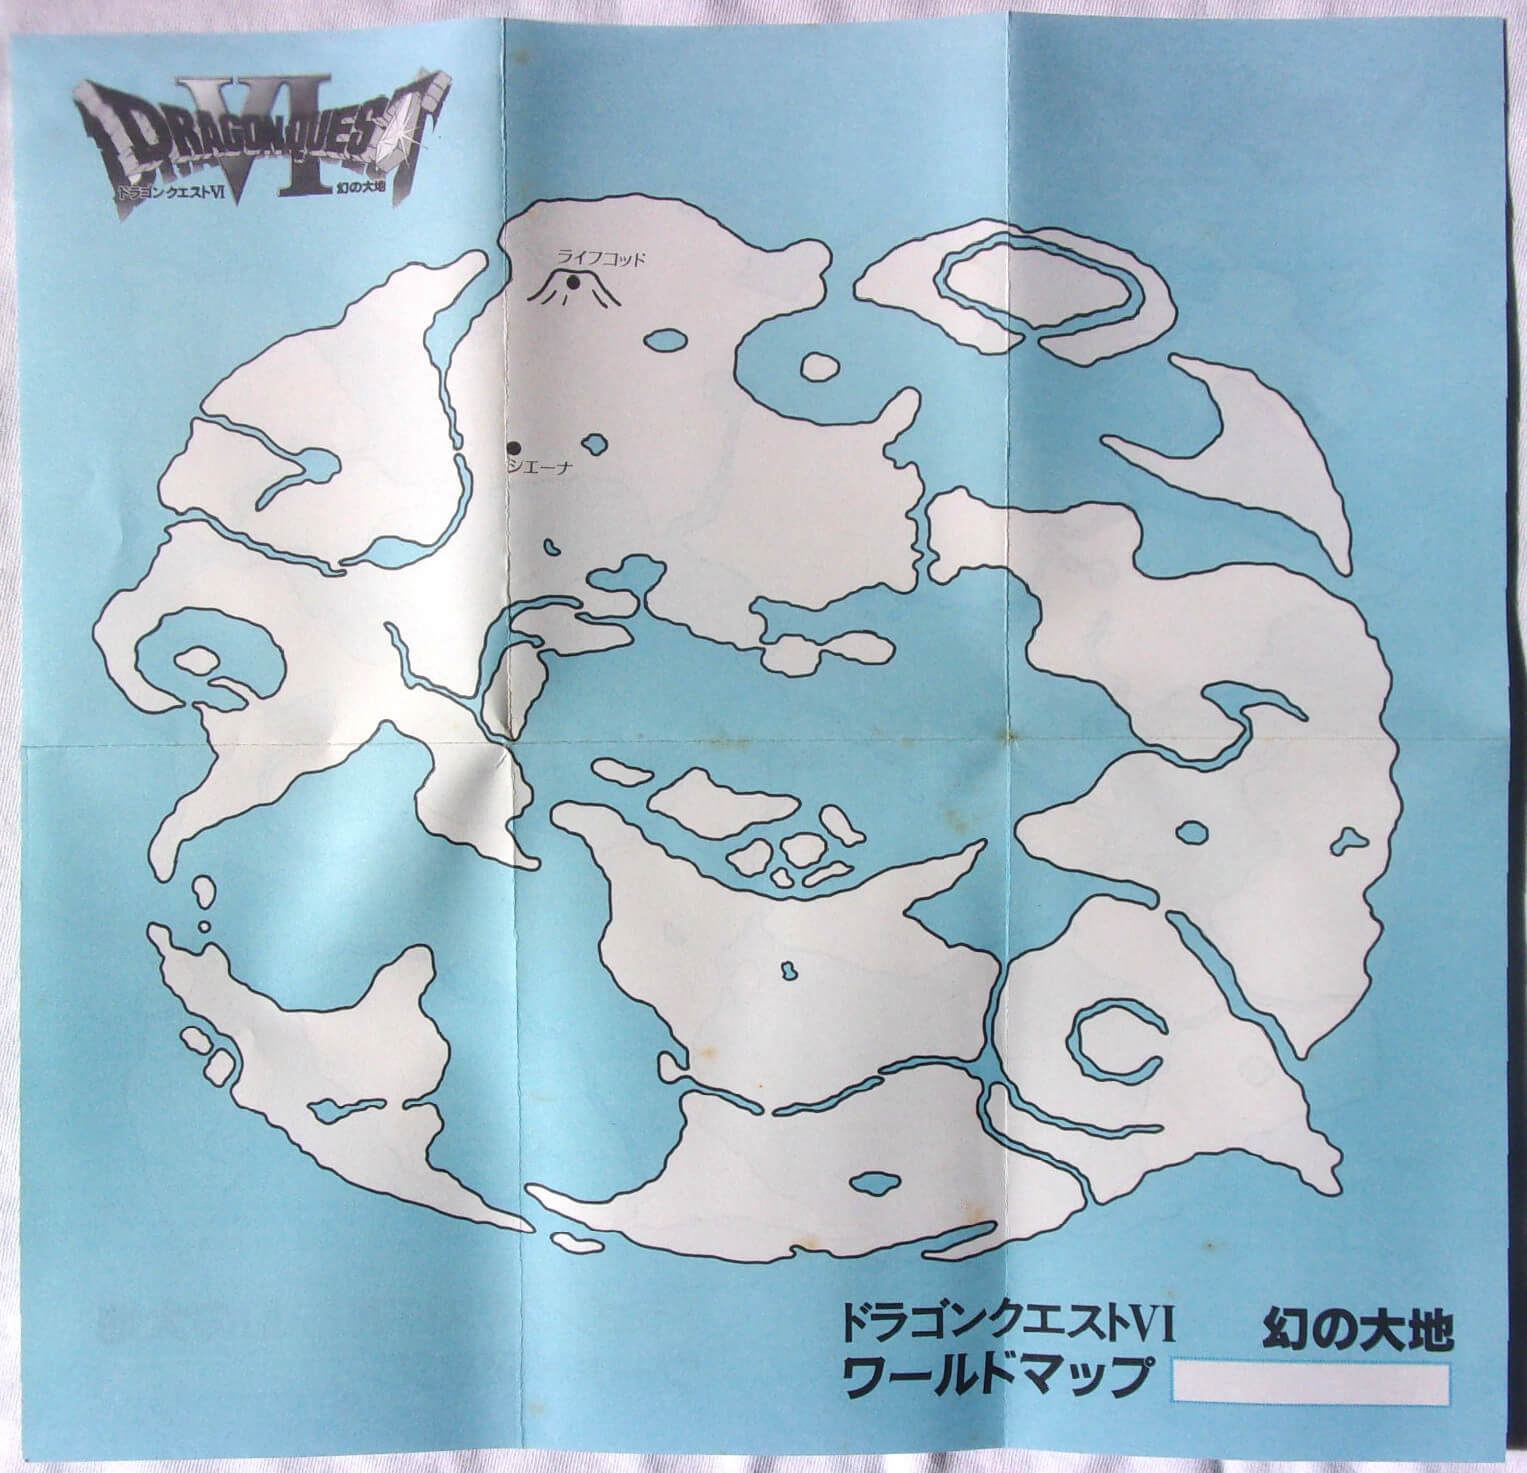 El Pequeño Rincón de los Grandes RPG - Dragon Quest VI - Colección Mapa sueños